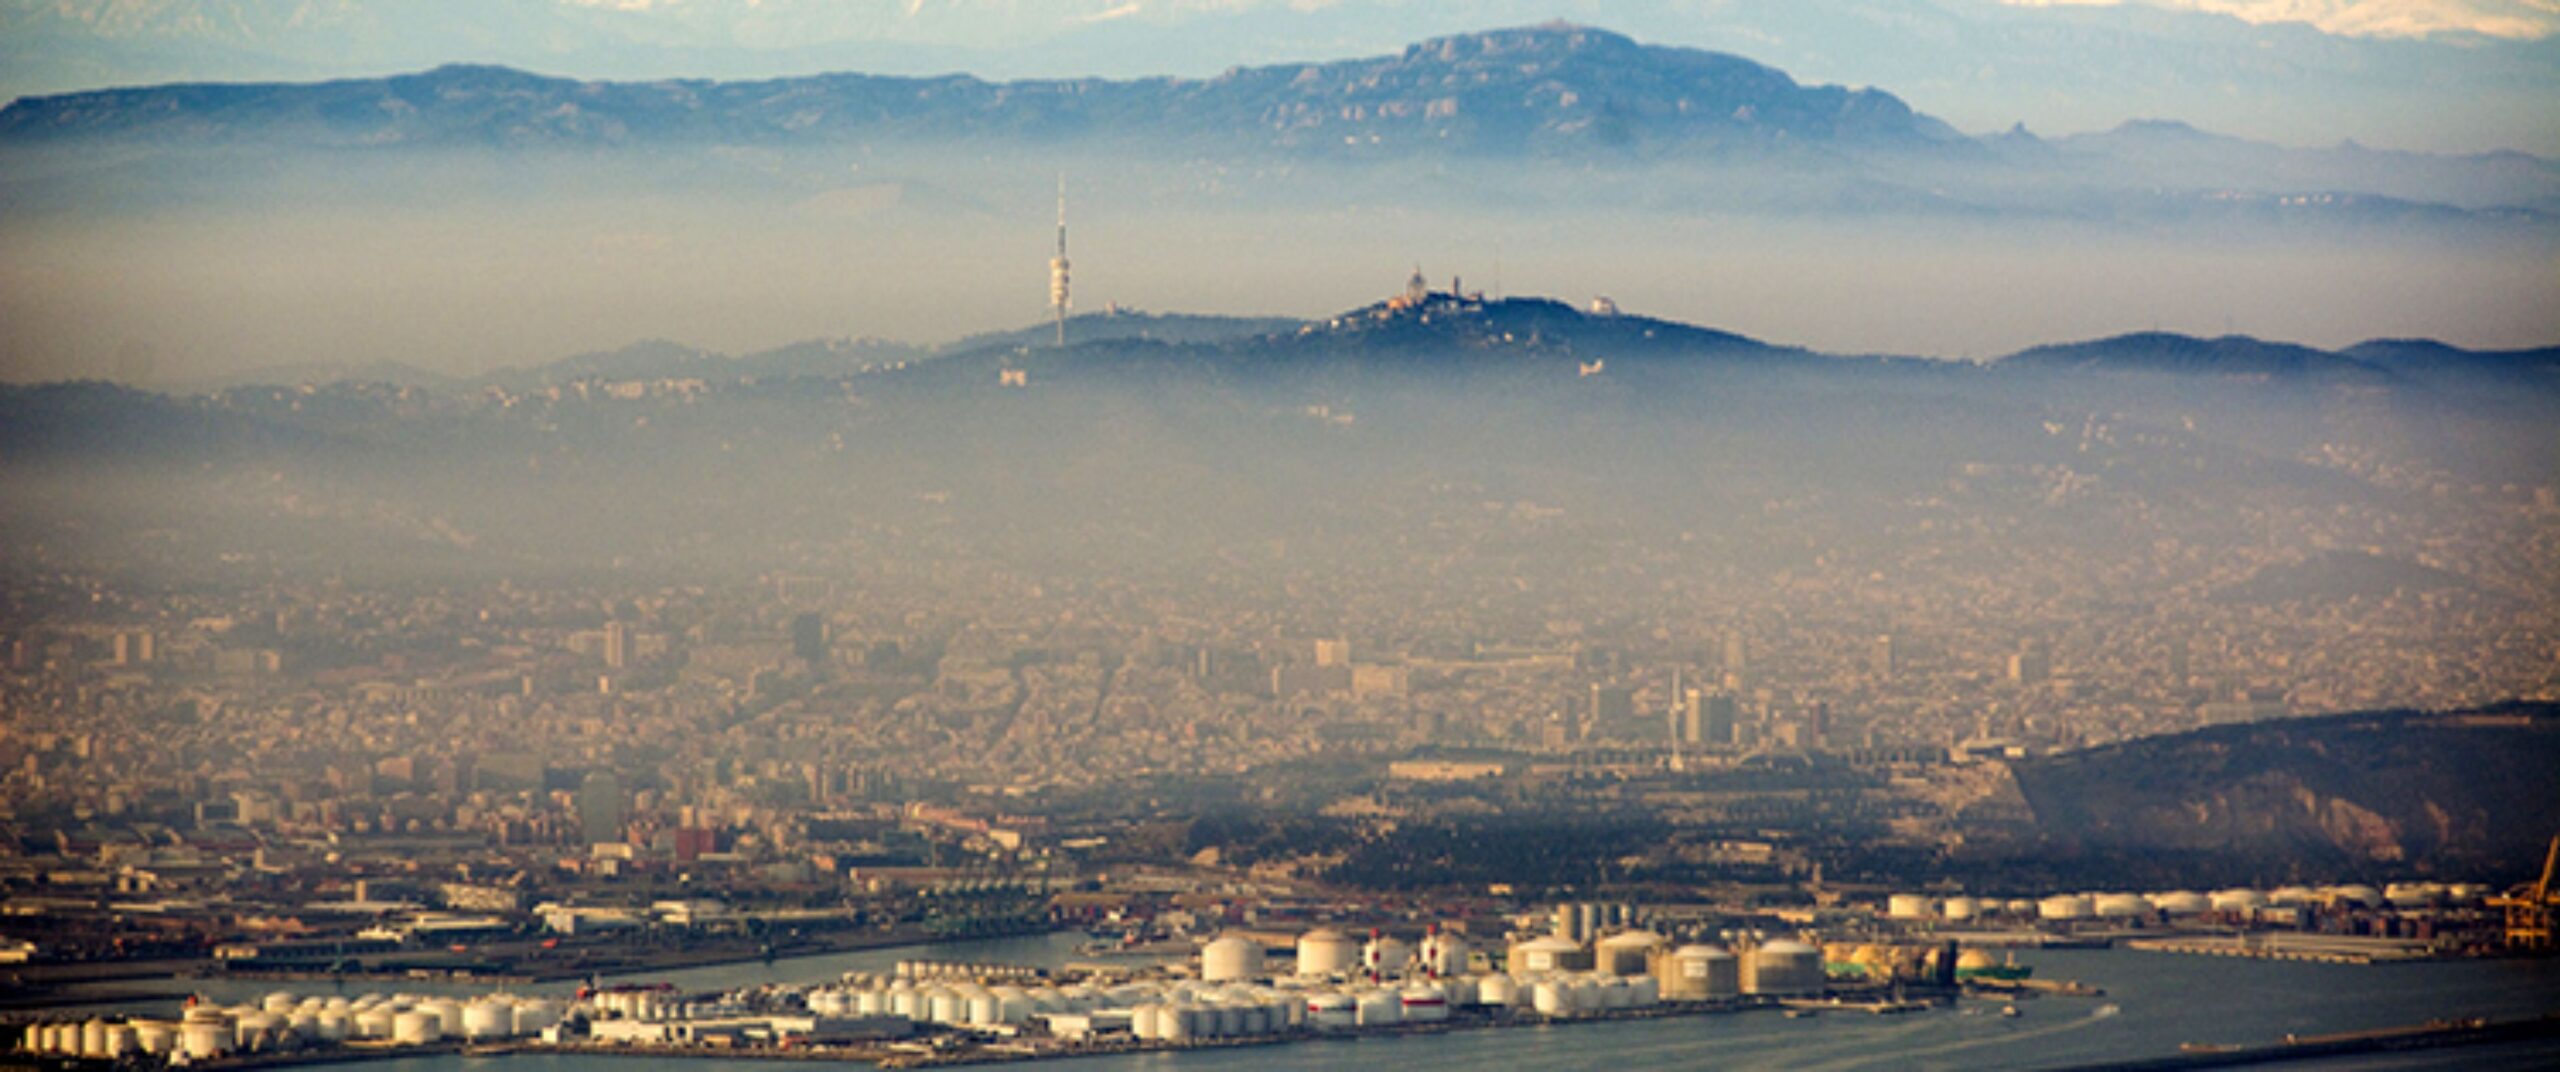 Núvols de contaminació sobre Barcelona, una de les imatges del pavelló català. Foto: Jon Tugores